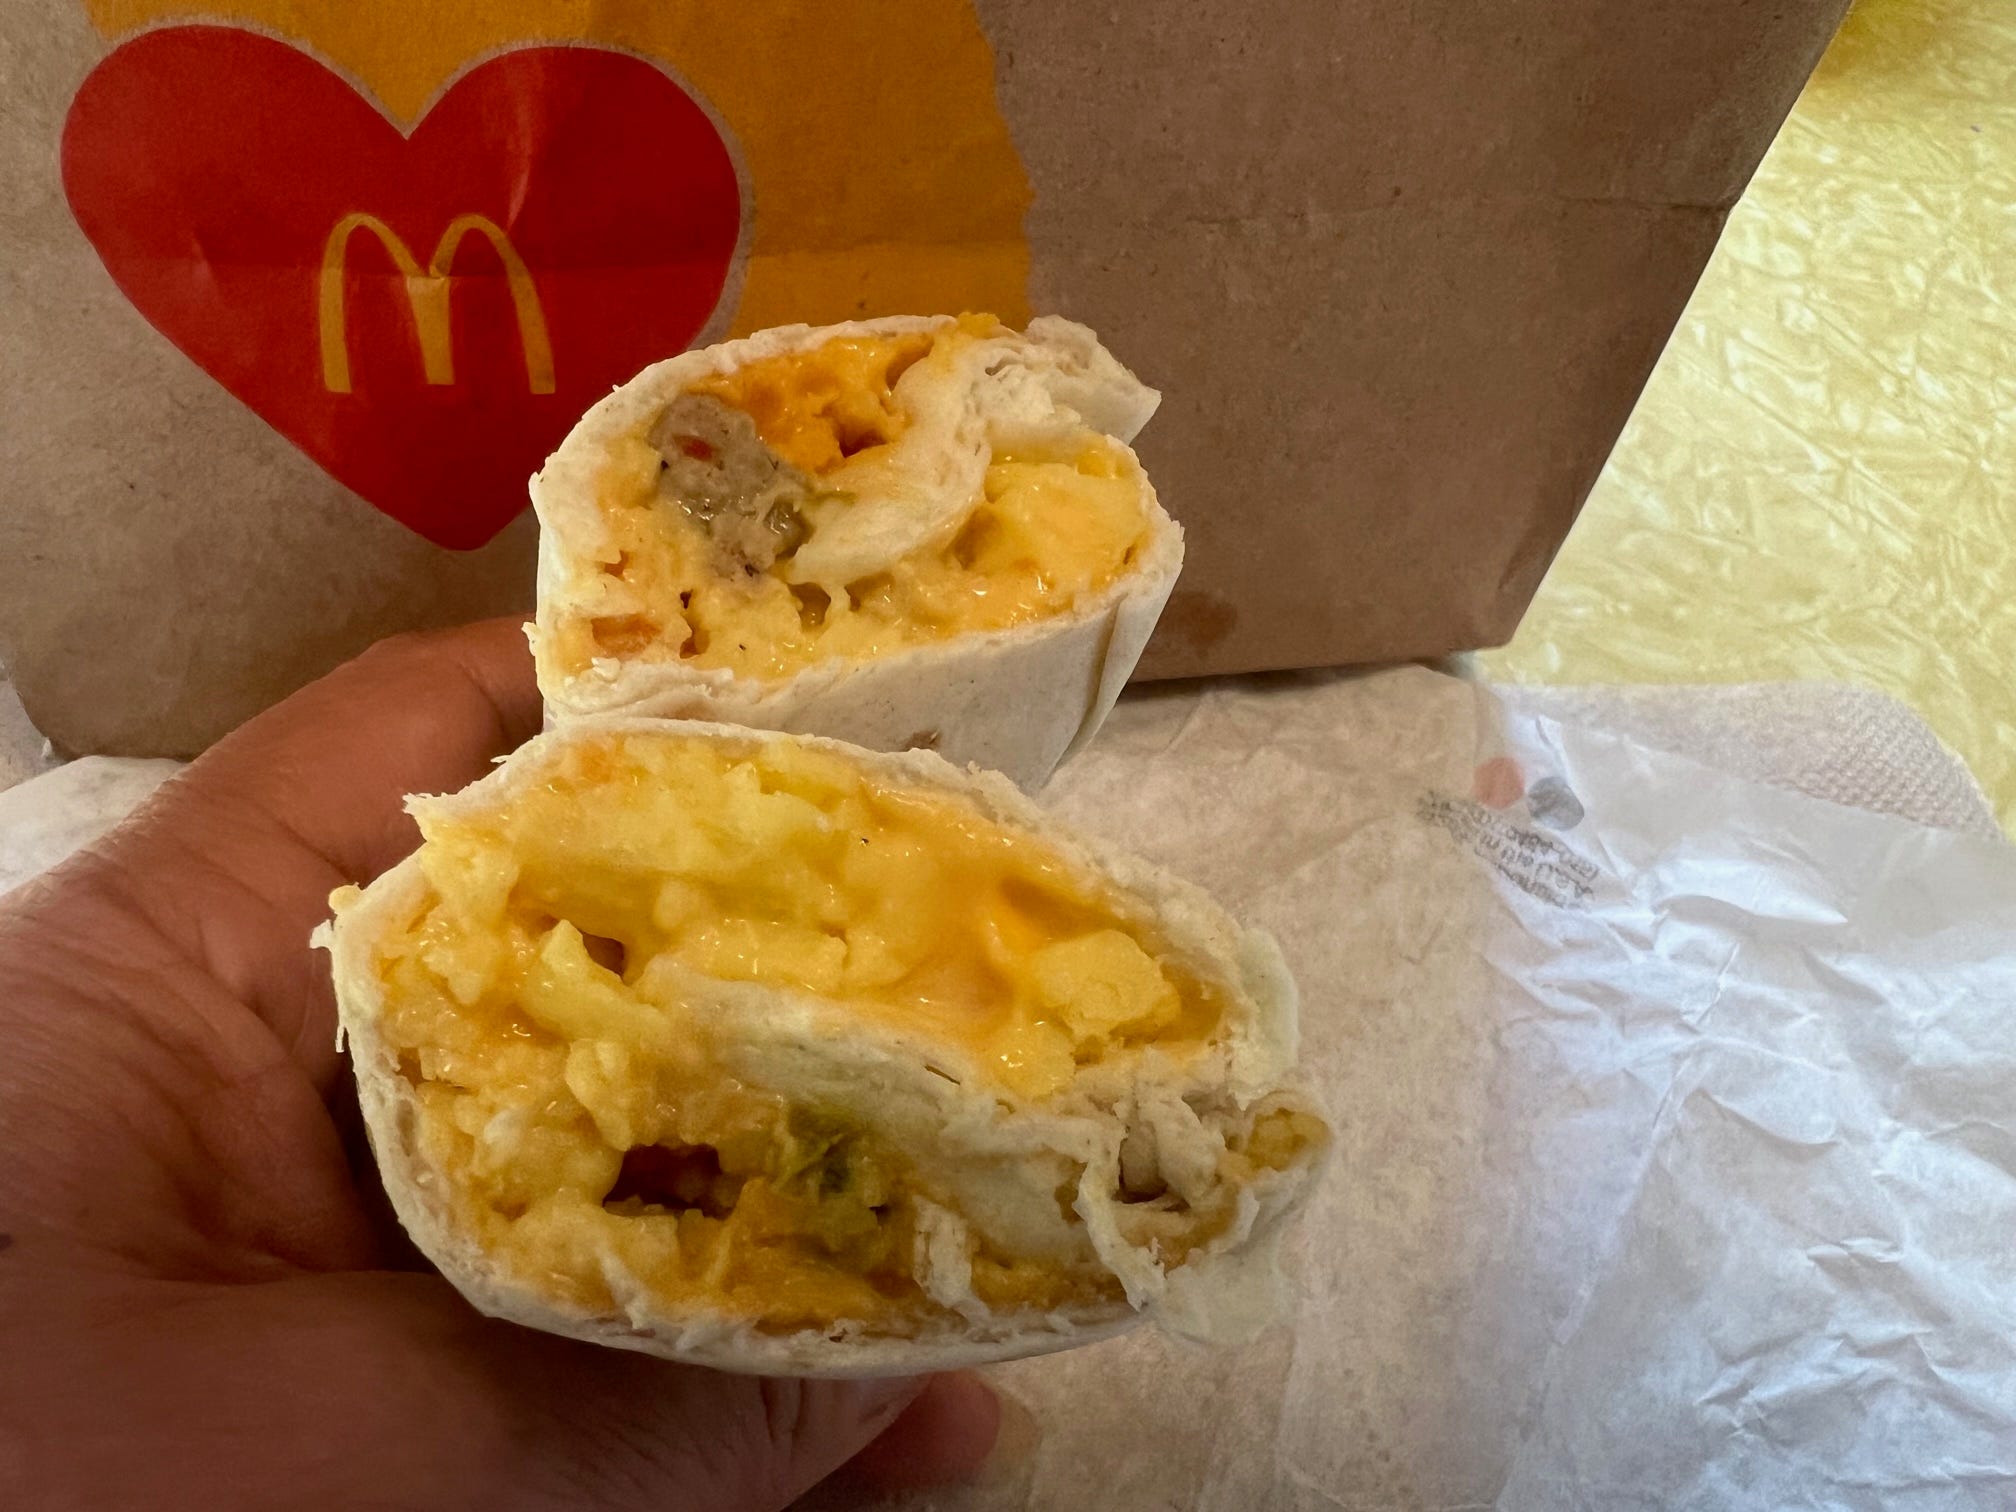 Der Wurst-Burrito von McDonald's.